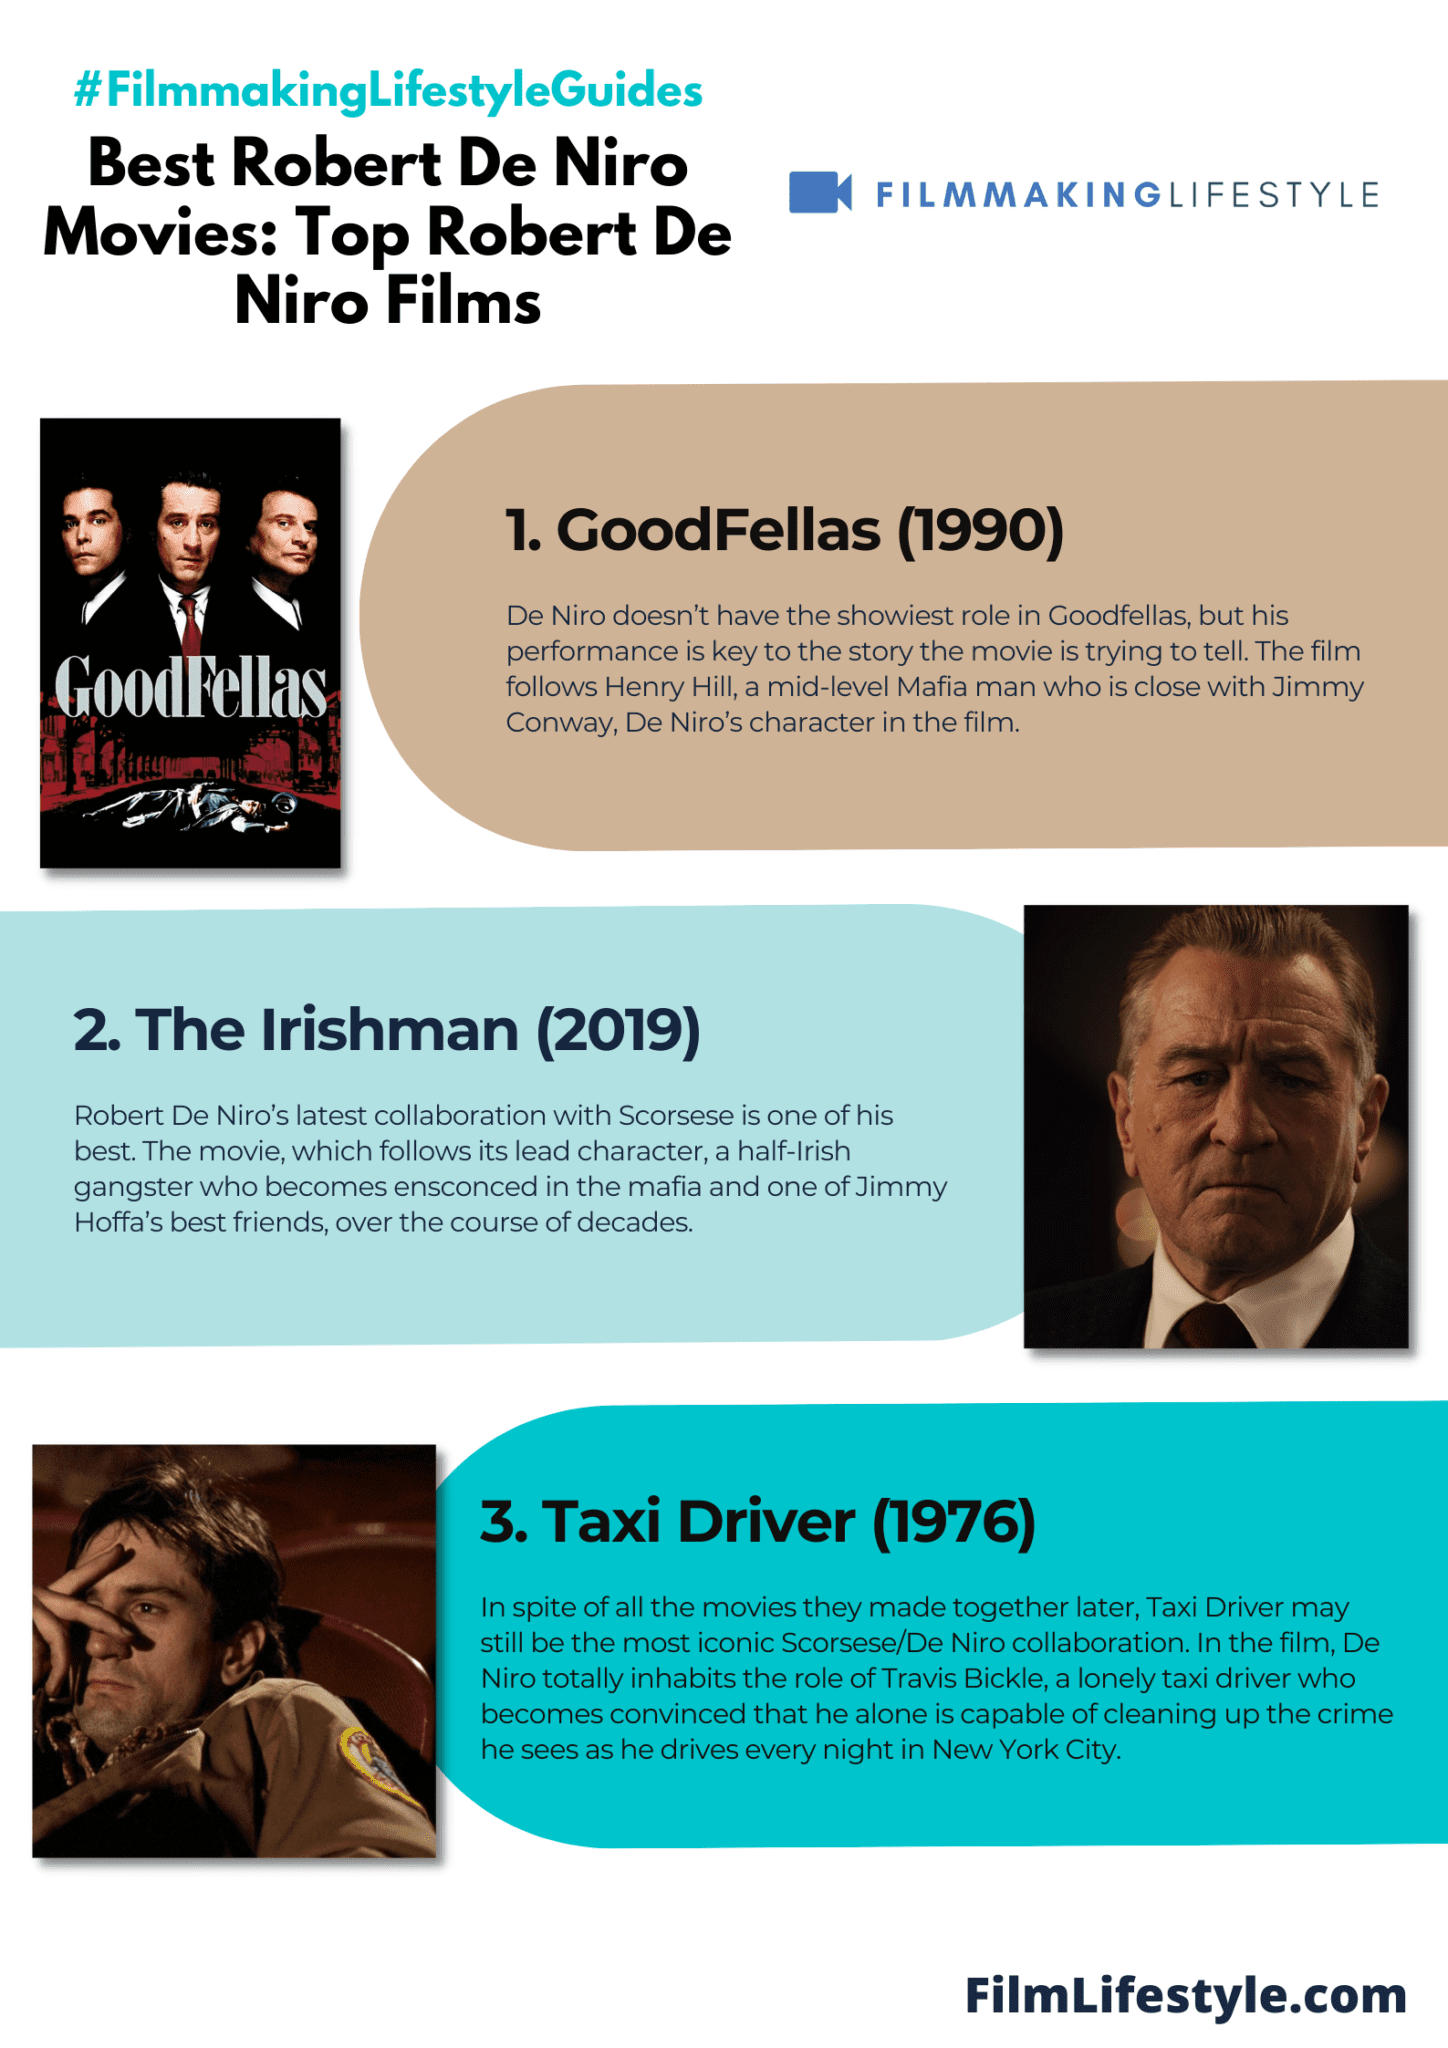 Best Robert De Niro Movies